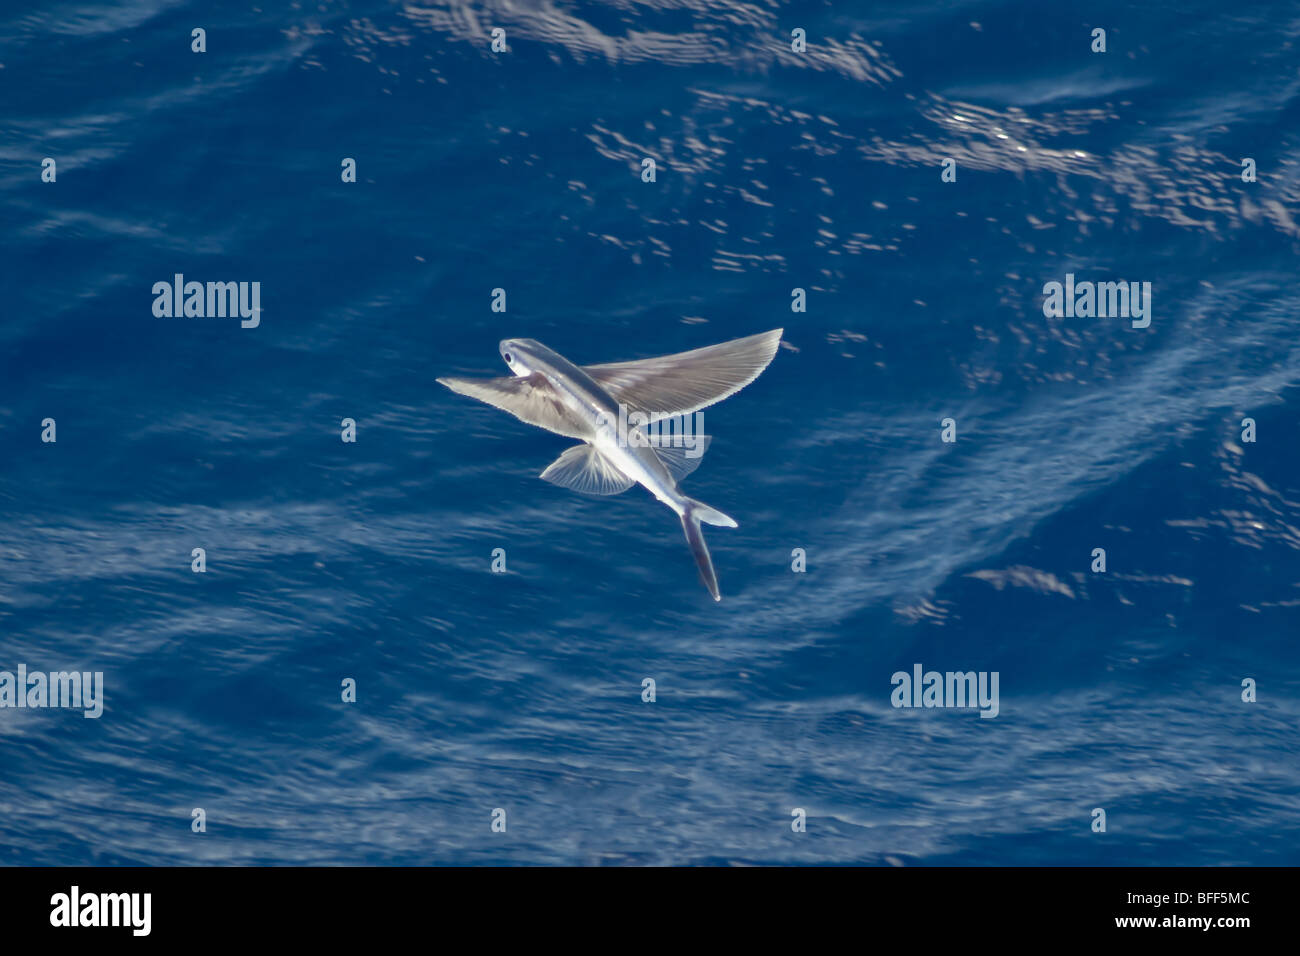 Especies de peces voladores en medio del aire, nombre científico desconocido, el Océano Atlántico Sur. Foto de stock